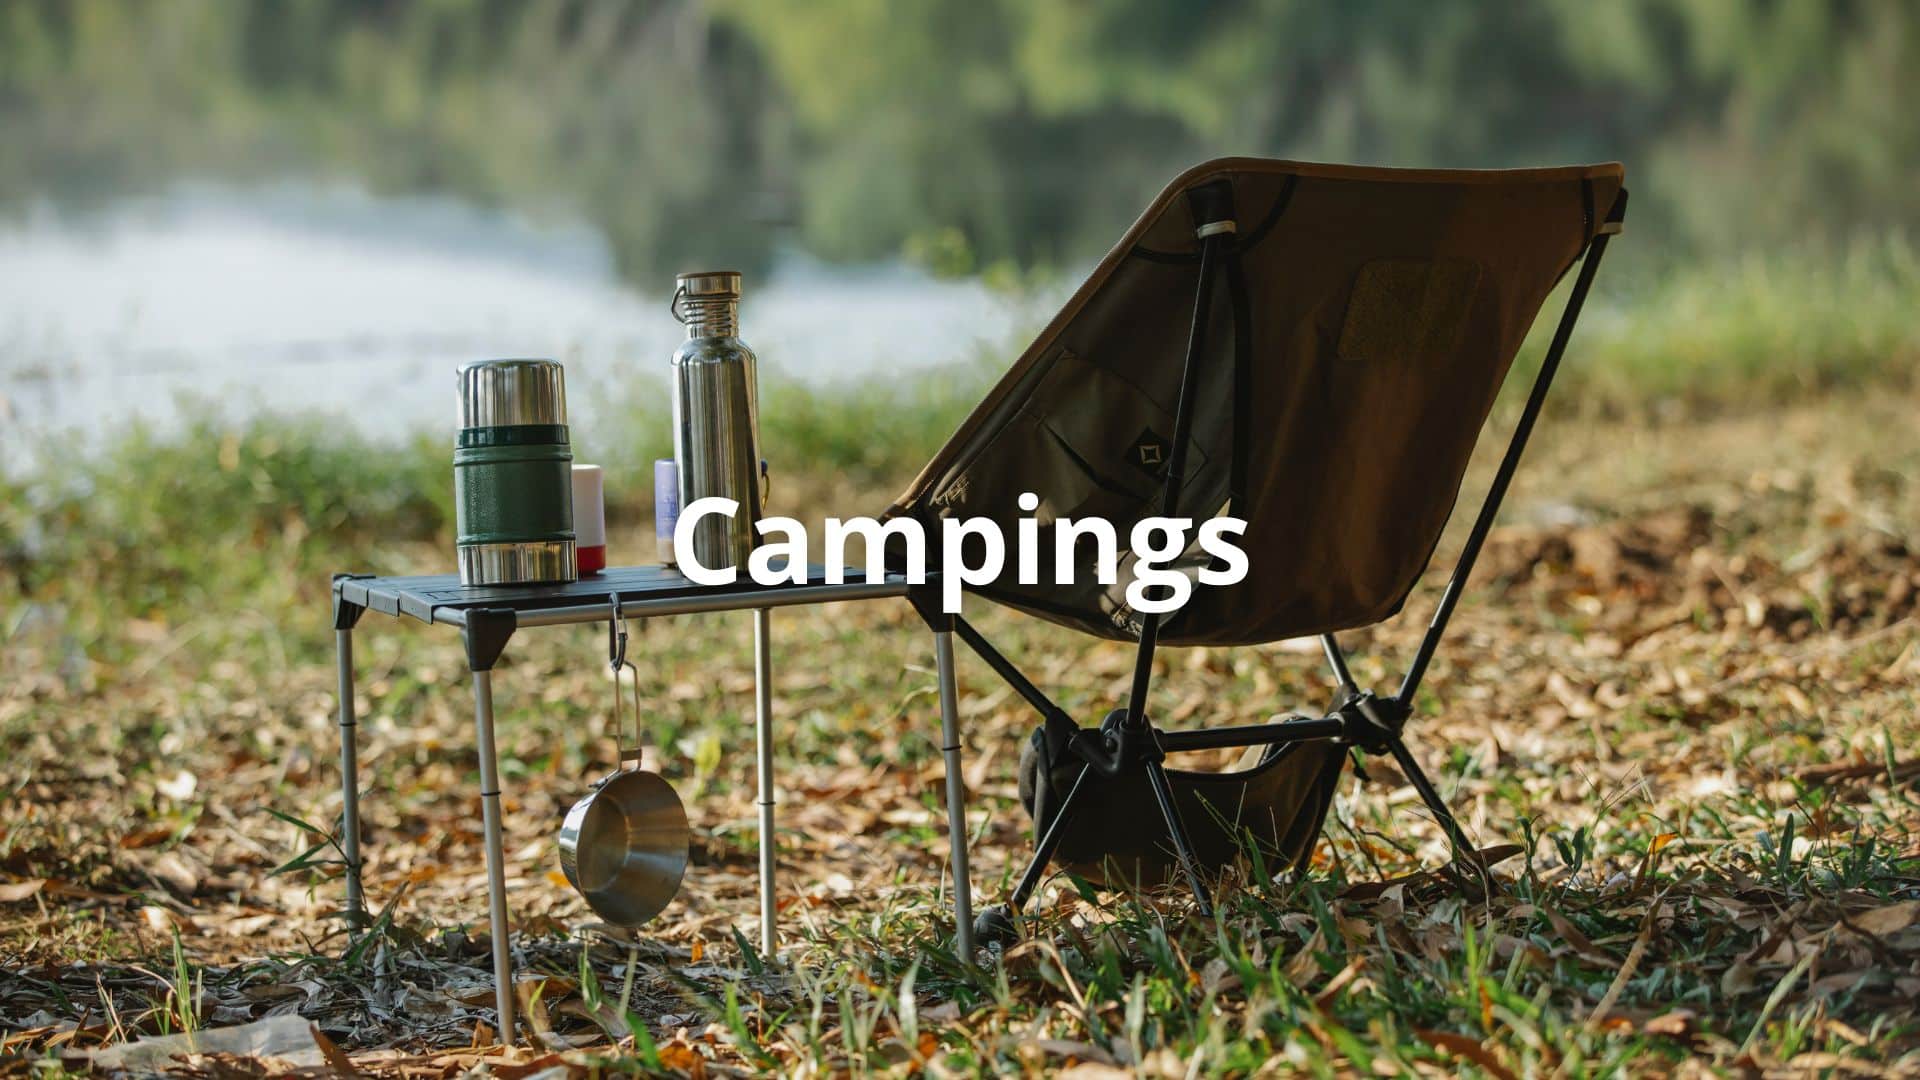 Découvrez notre sélection de campings pour votre cure thermale dans le Grand Dax : plusieurs niveaux de service et de confort selon votre budget et vos envies.